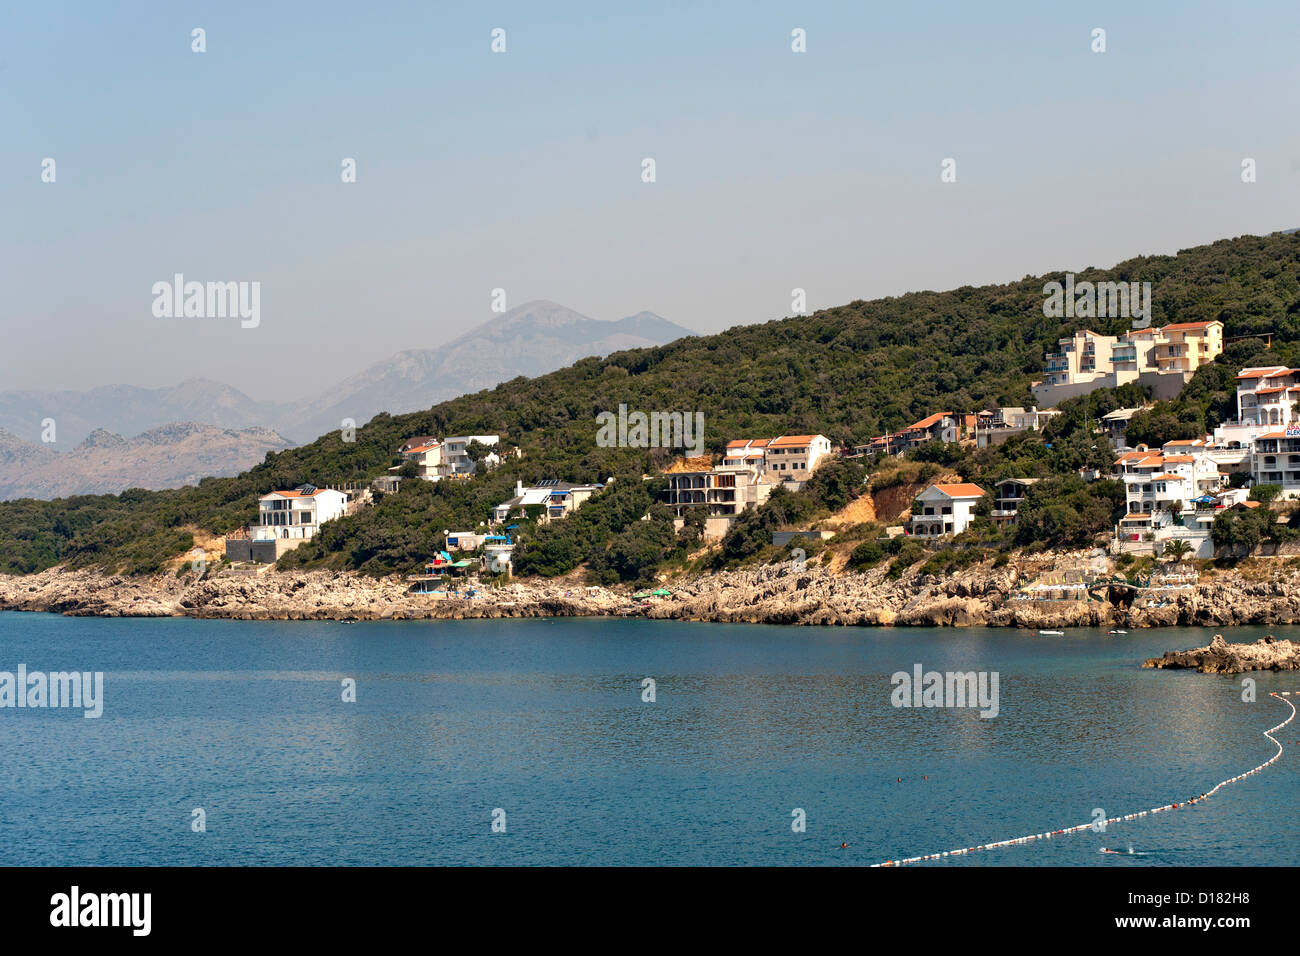 Il litorale Adriatico lungo del Montenegro costa meridionale vicino alla città di Bar. Foto Stock